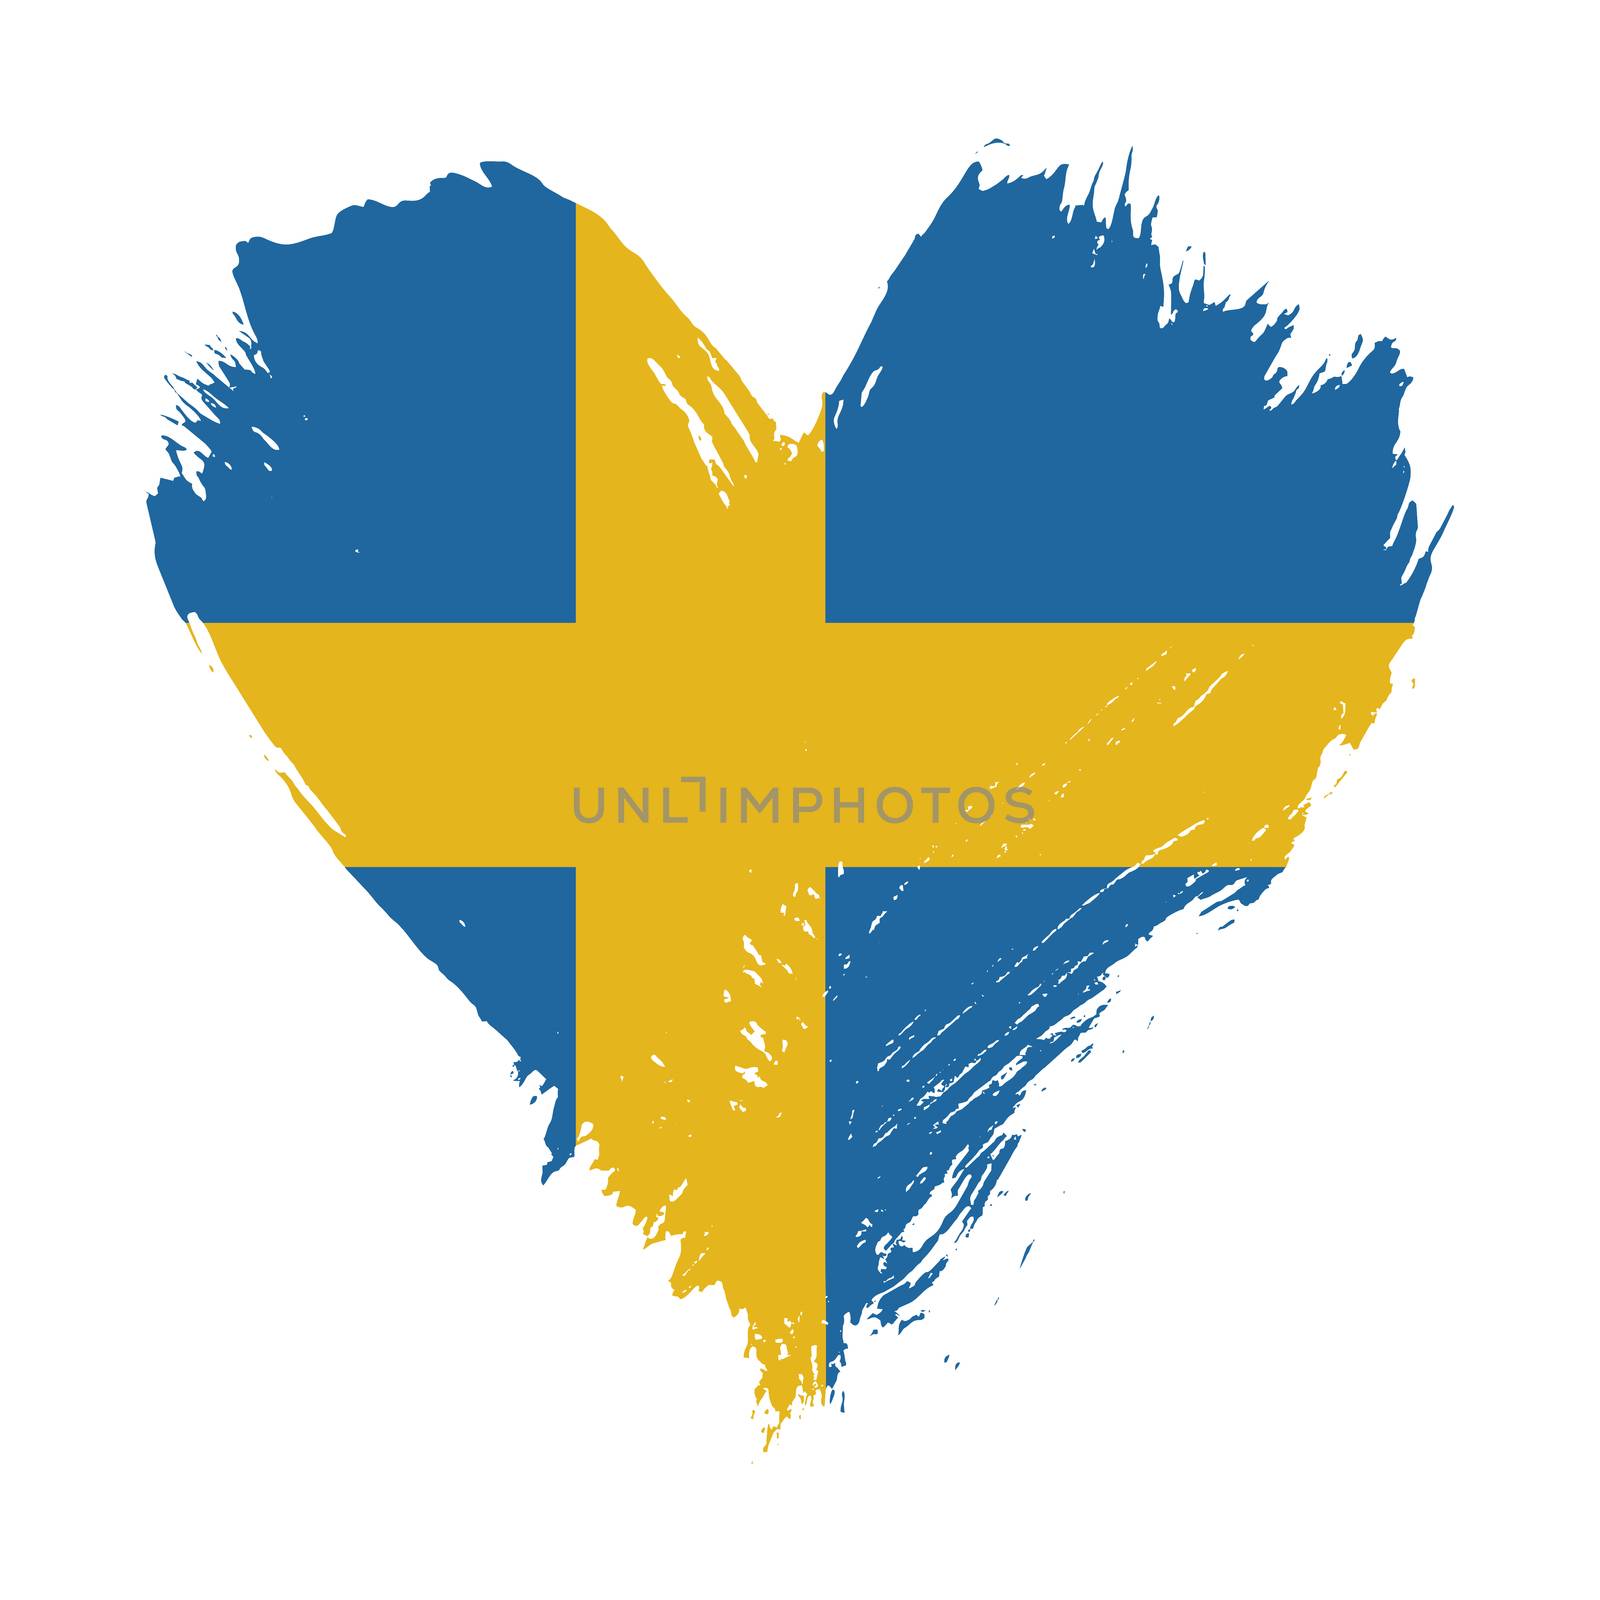 Grunge brushstroke painted illustration of heart shaped distressed Swedish flag isolated on white background